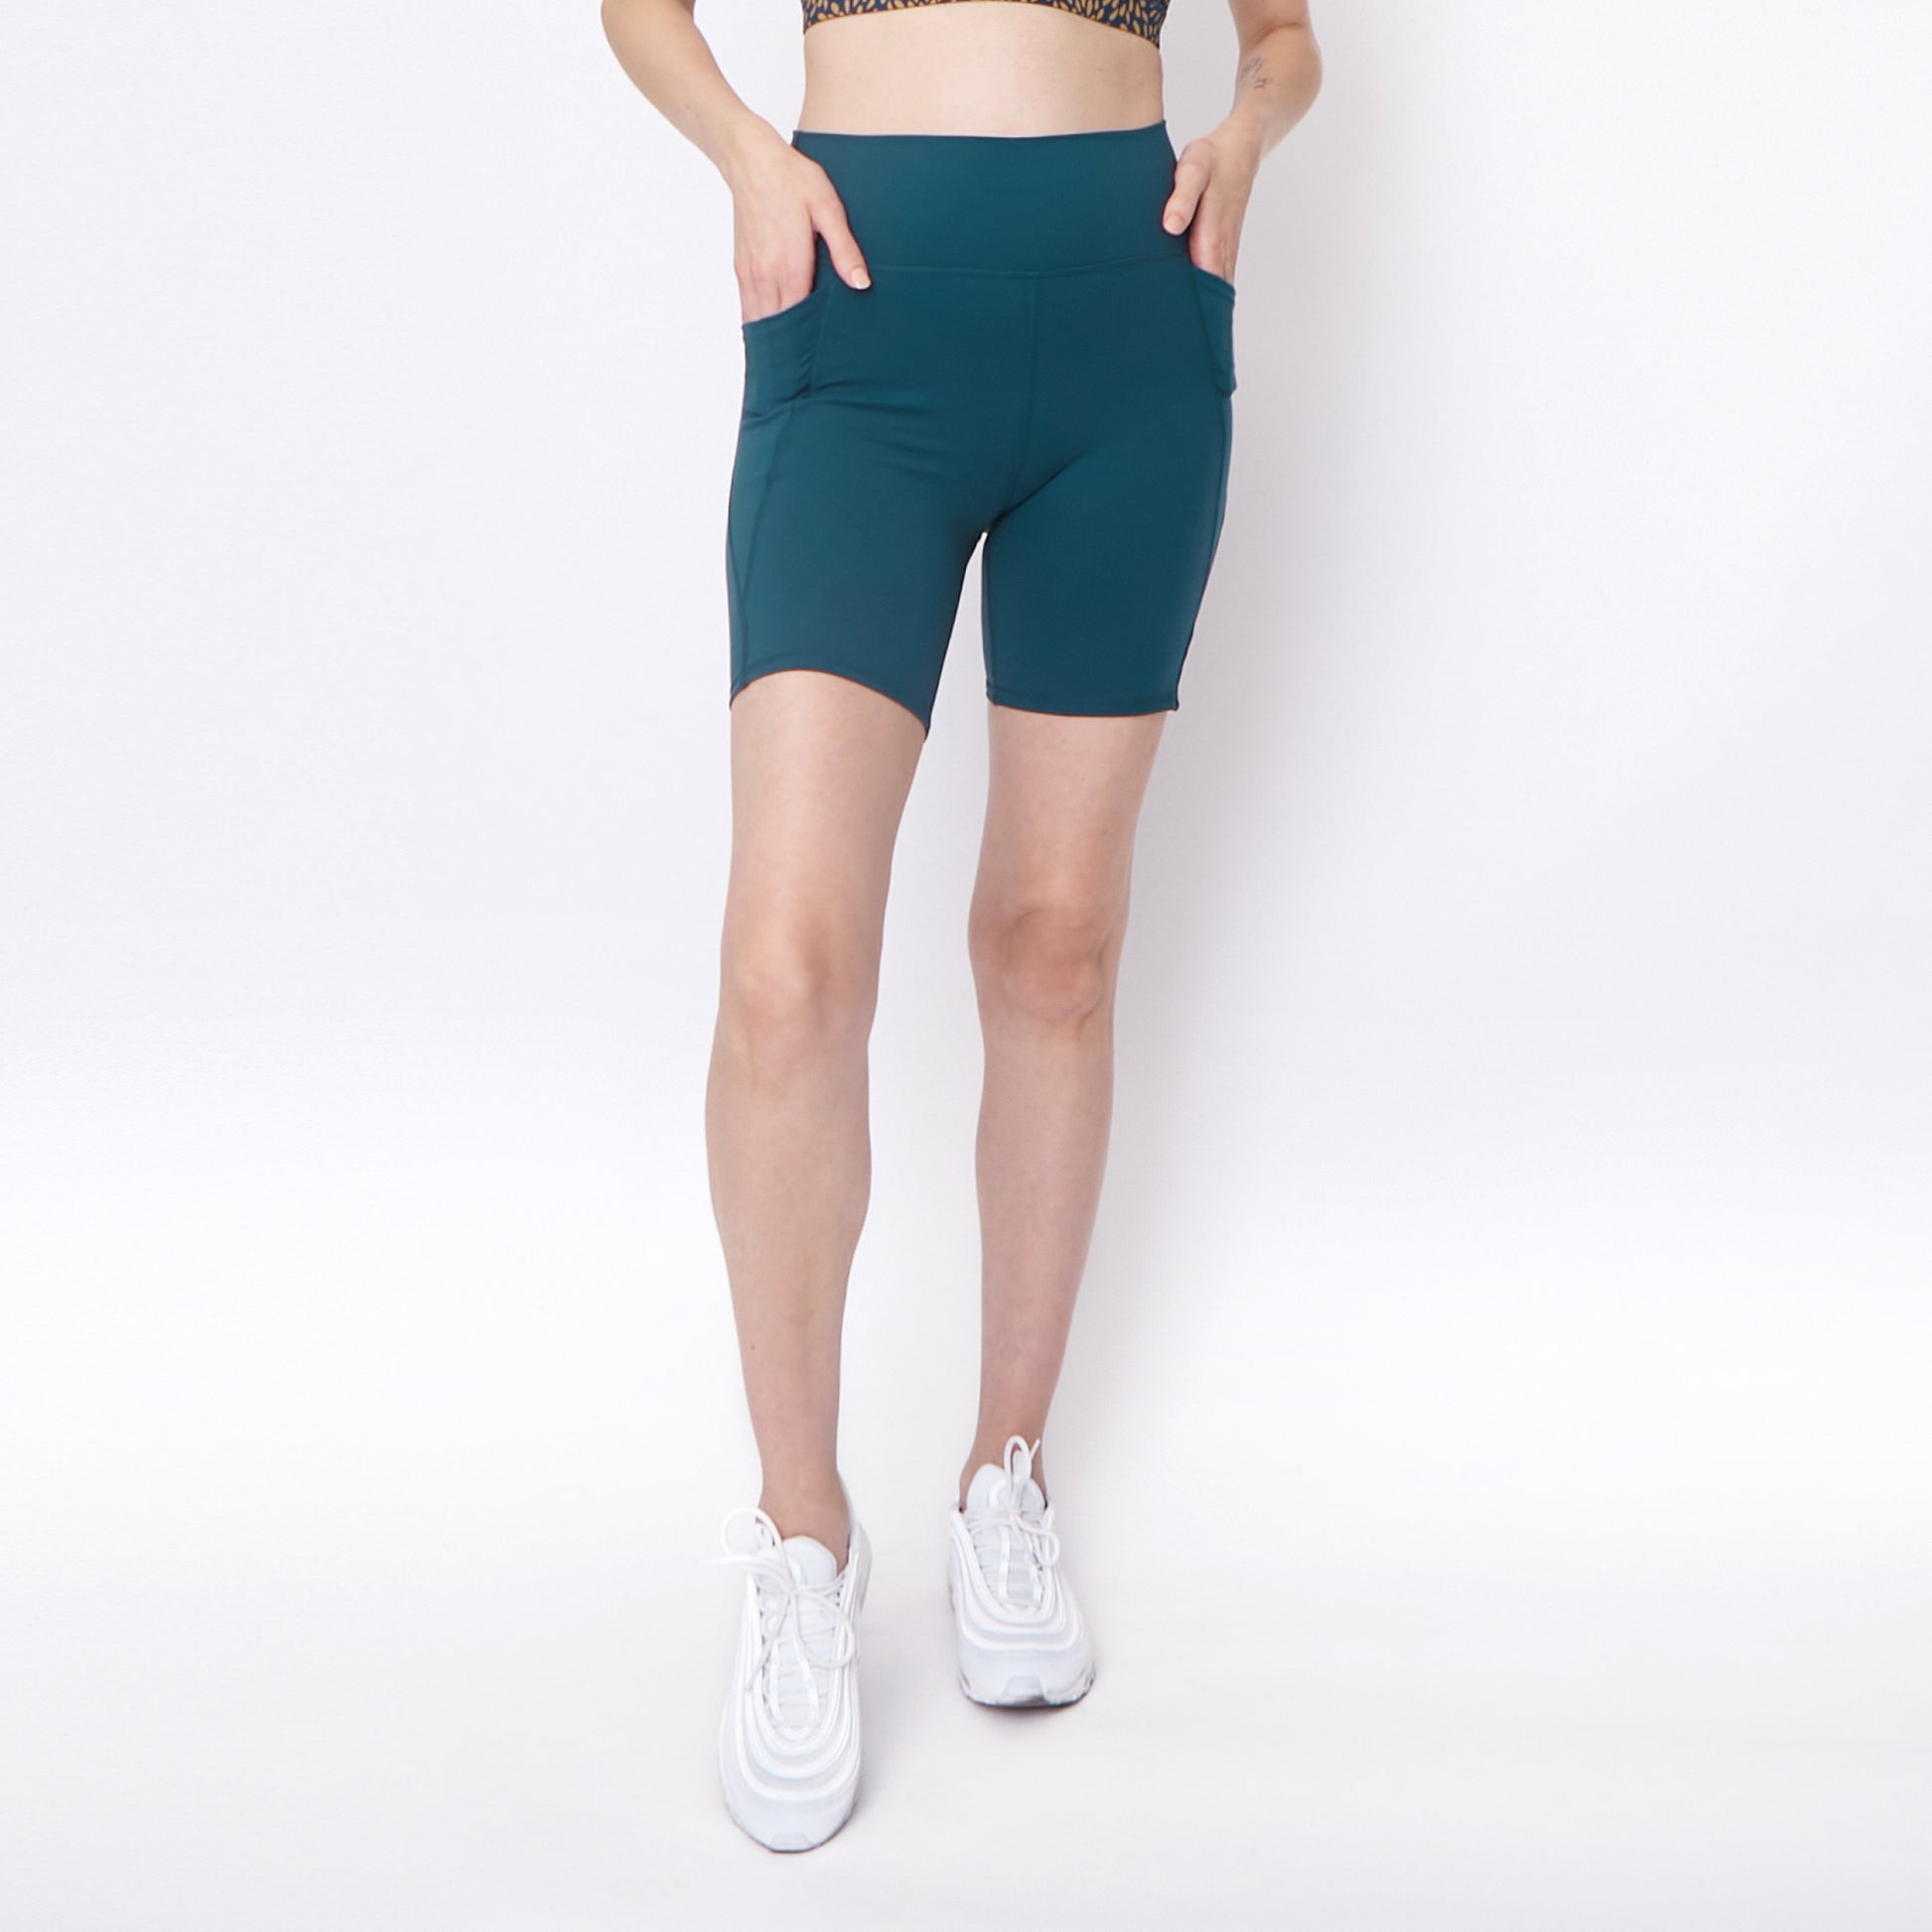 The Best Running Shorts for Summer: Senita Biker Shorts Review - The Runner  Doc